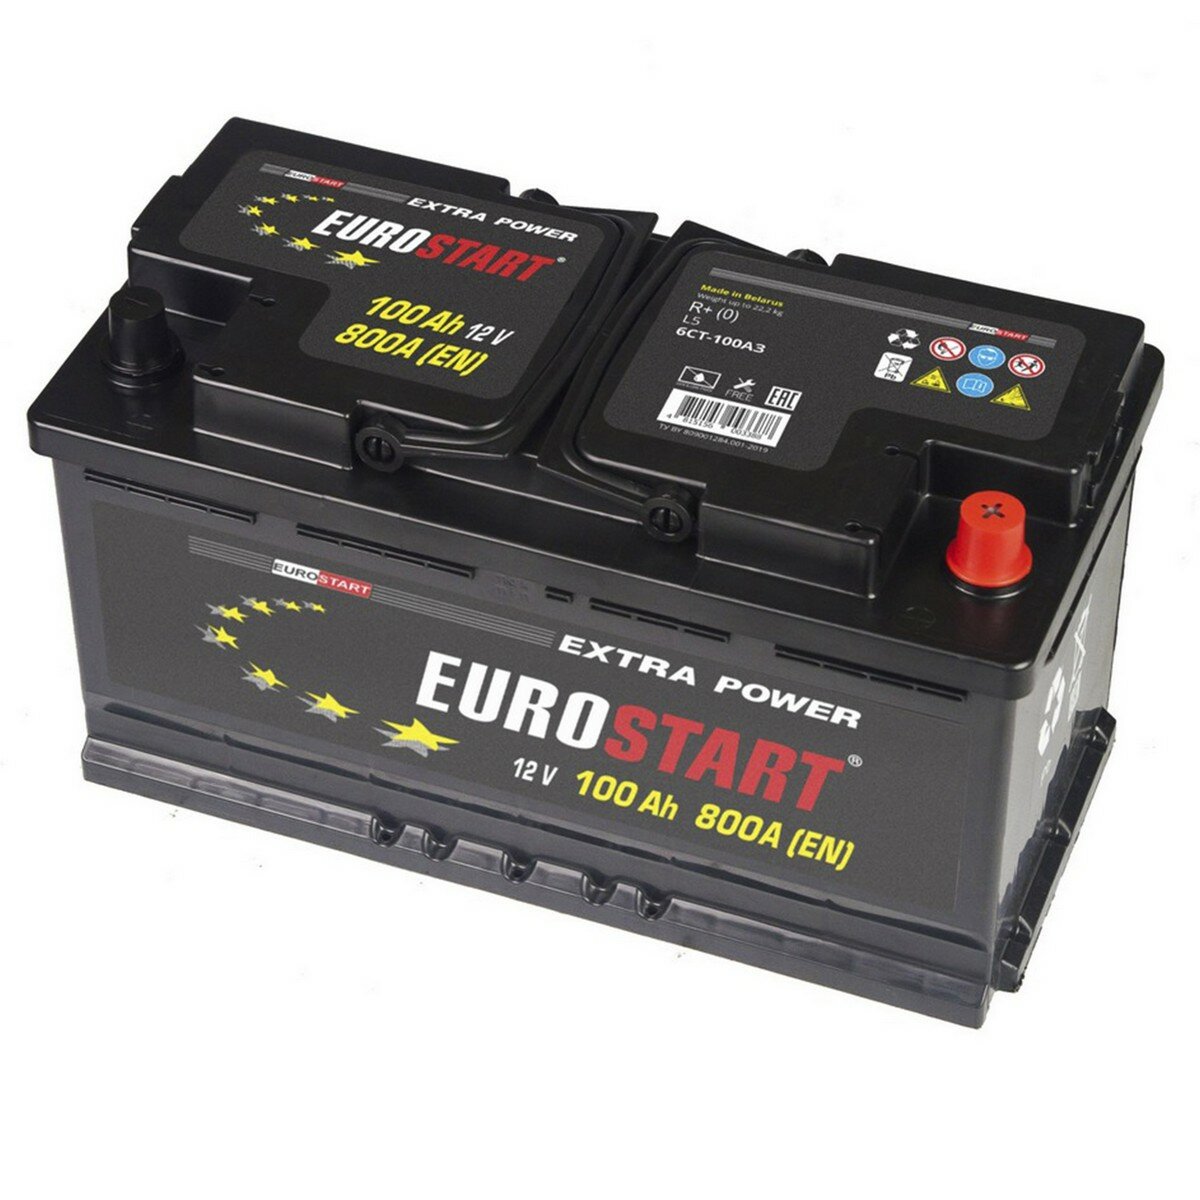 Аккумулятор автомобильный EUROSTART Extra Power 100 Ah 800 A обратная полярность 353x175x190